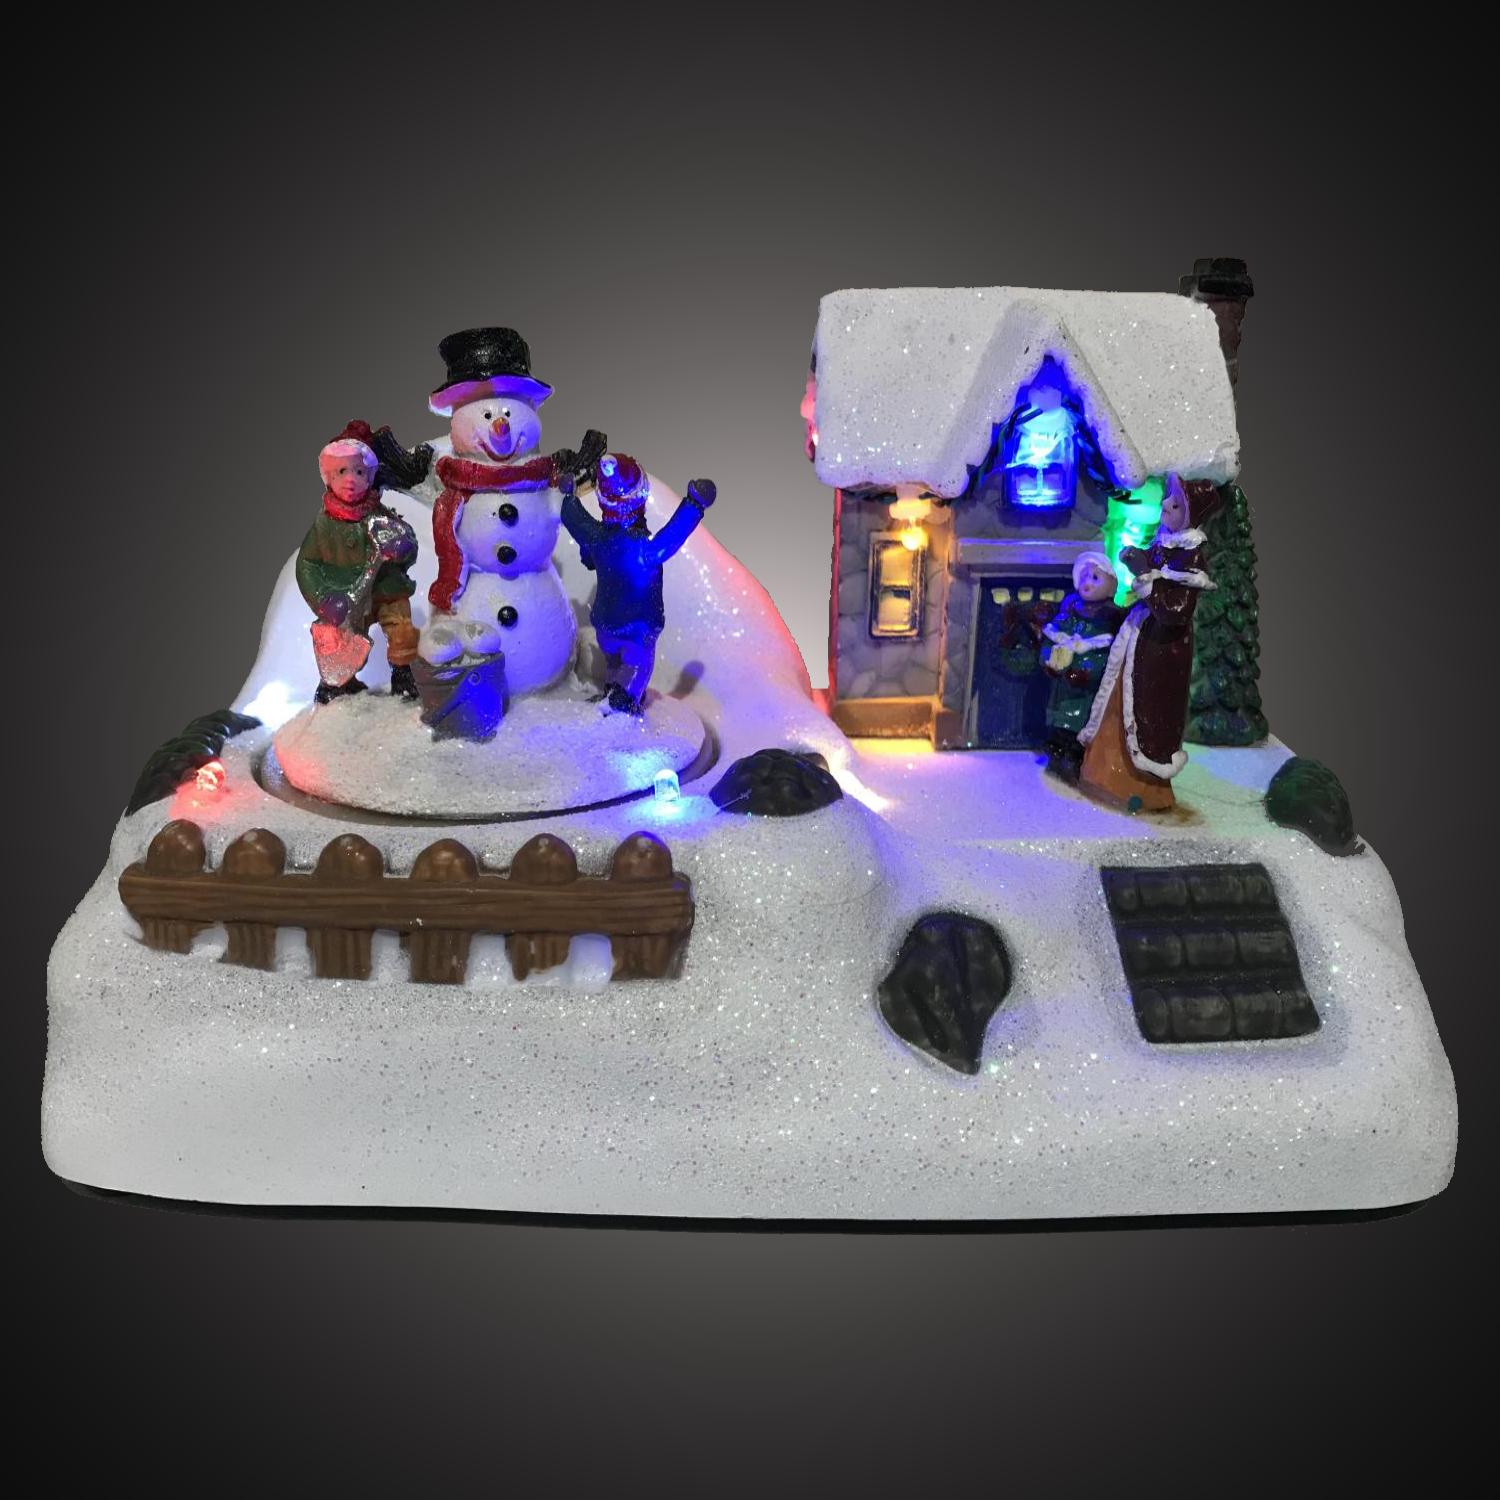 Led kersthuisje - 7 lampjes - 3x AA batterijen - 10 x 18 x 12 centimeter - multicolor